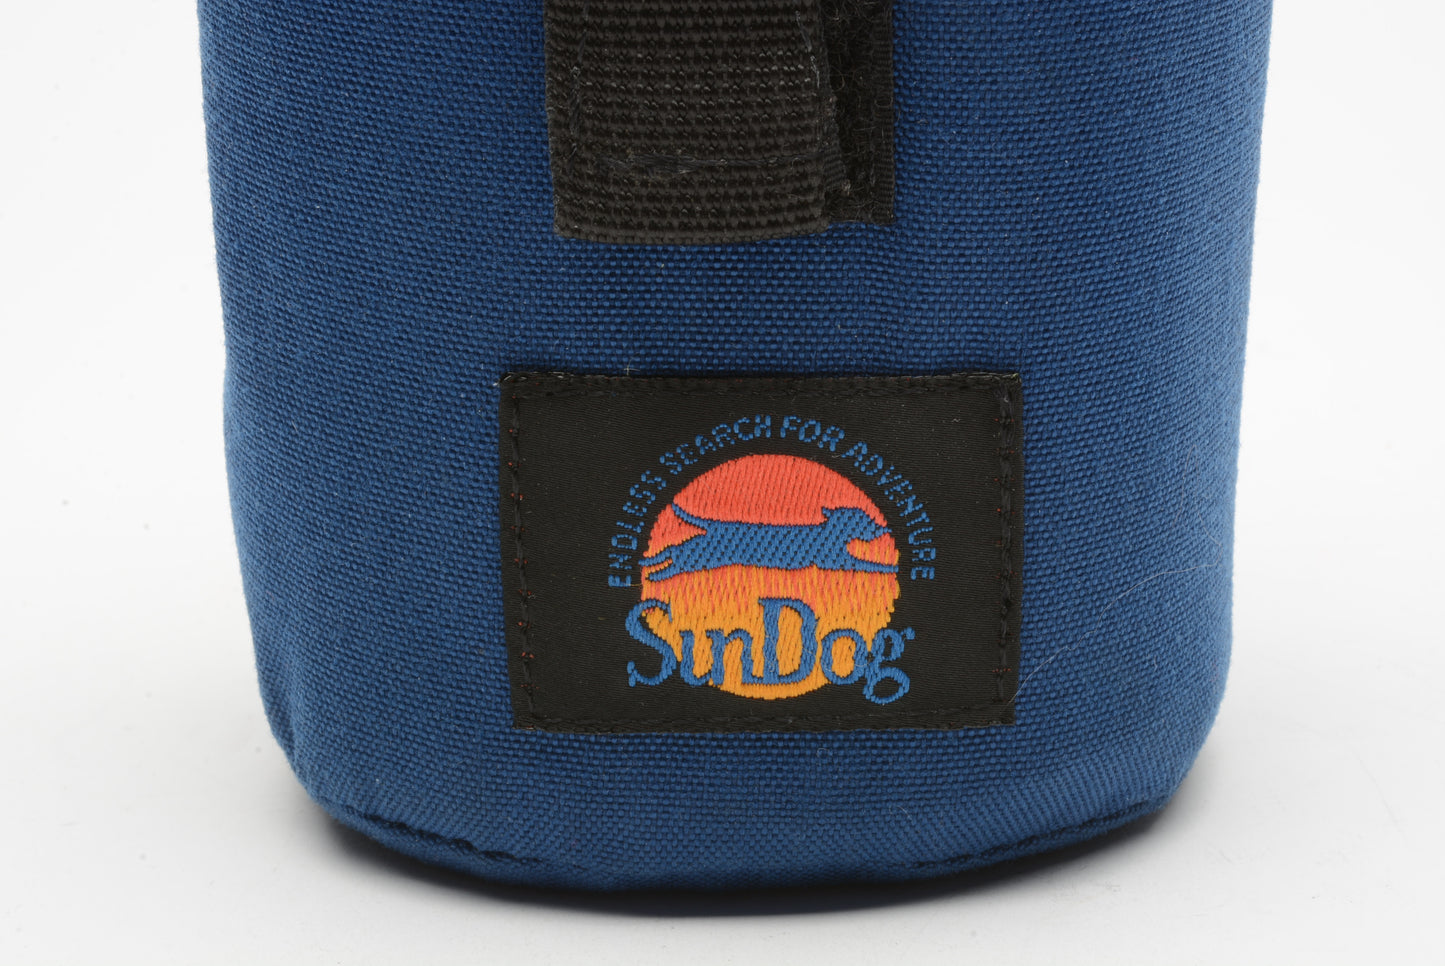 Sundog padded lens case 5" tall x 3" diameter (blue)